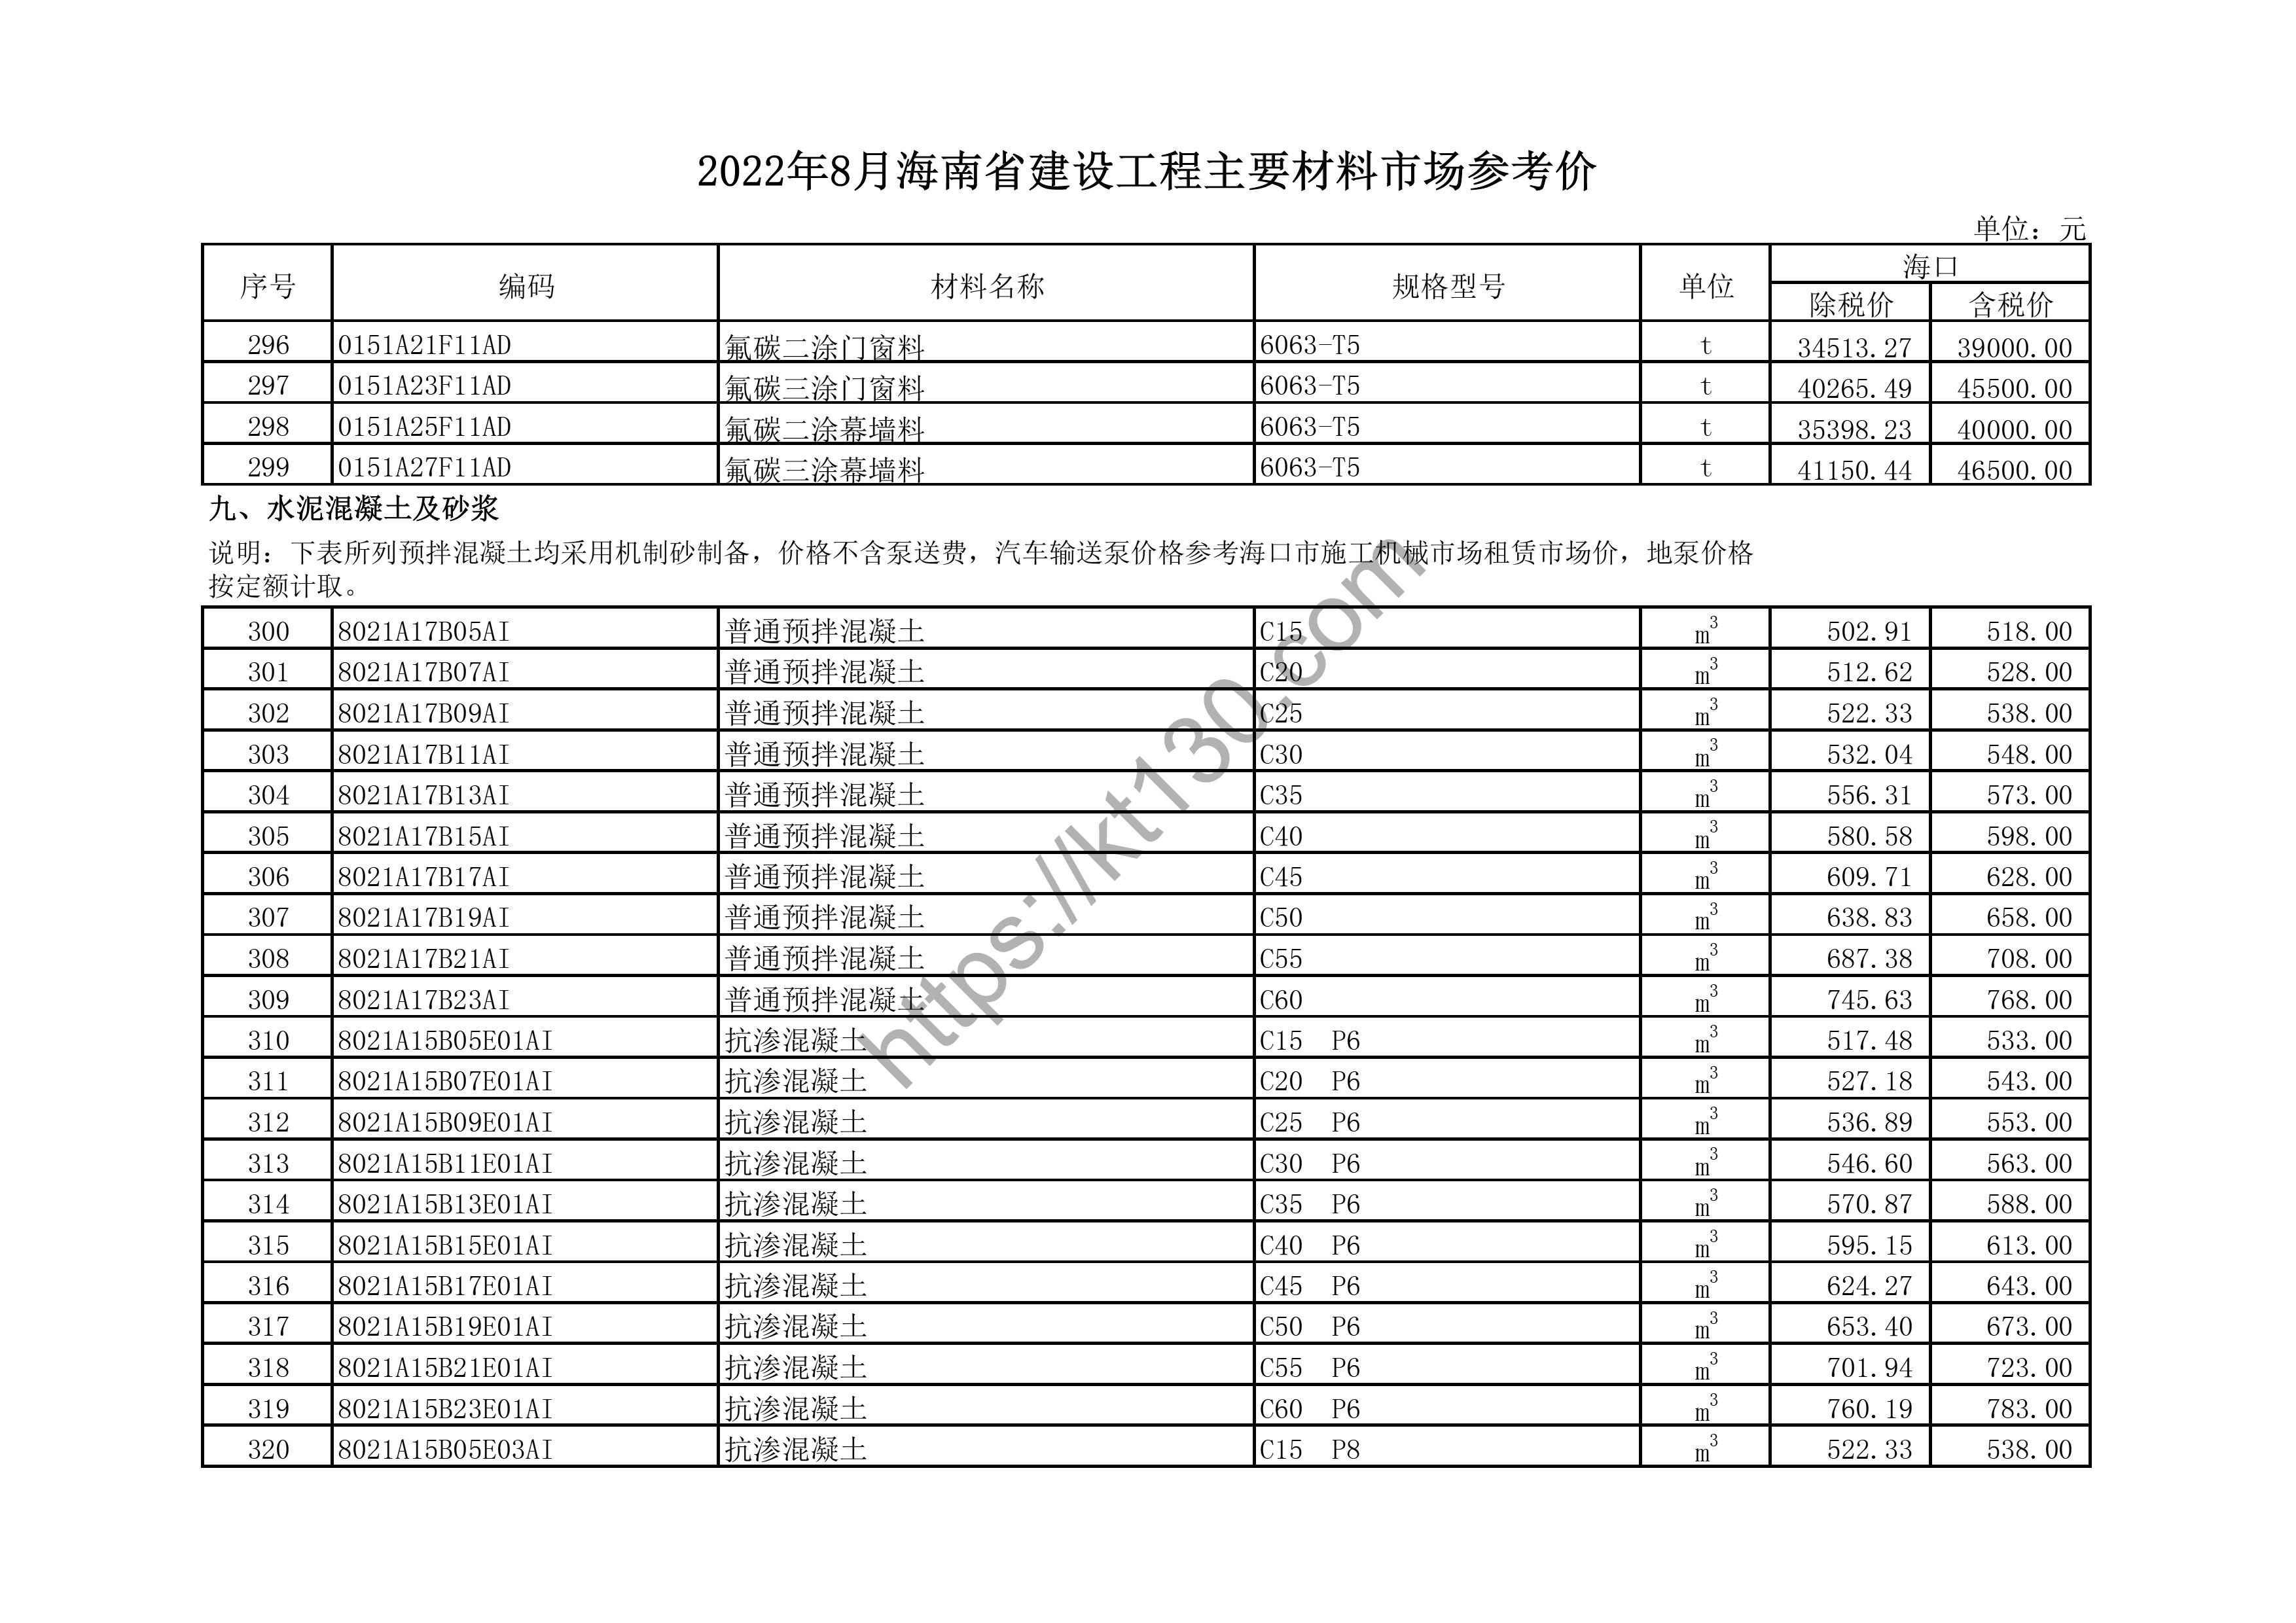 海南省2022年8月建筑材料价_胶合板_44593